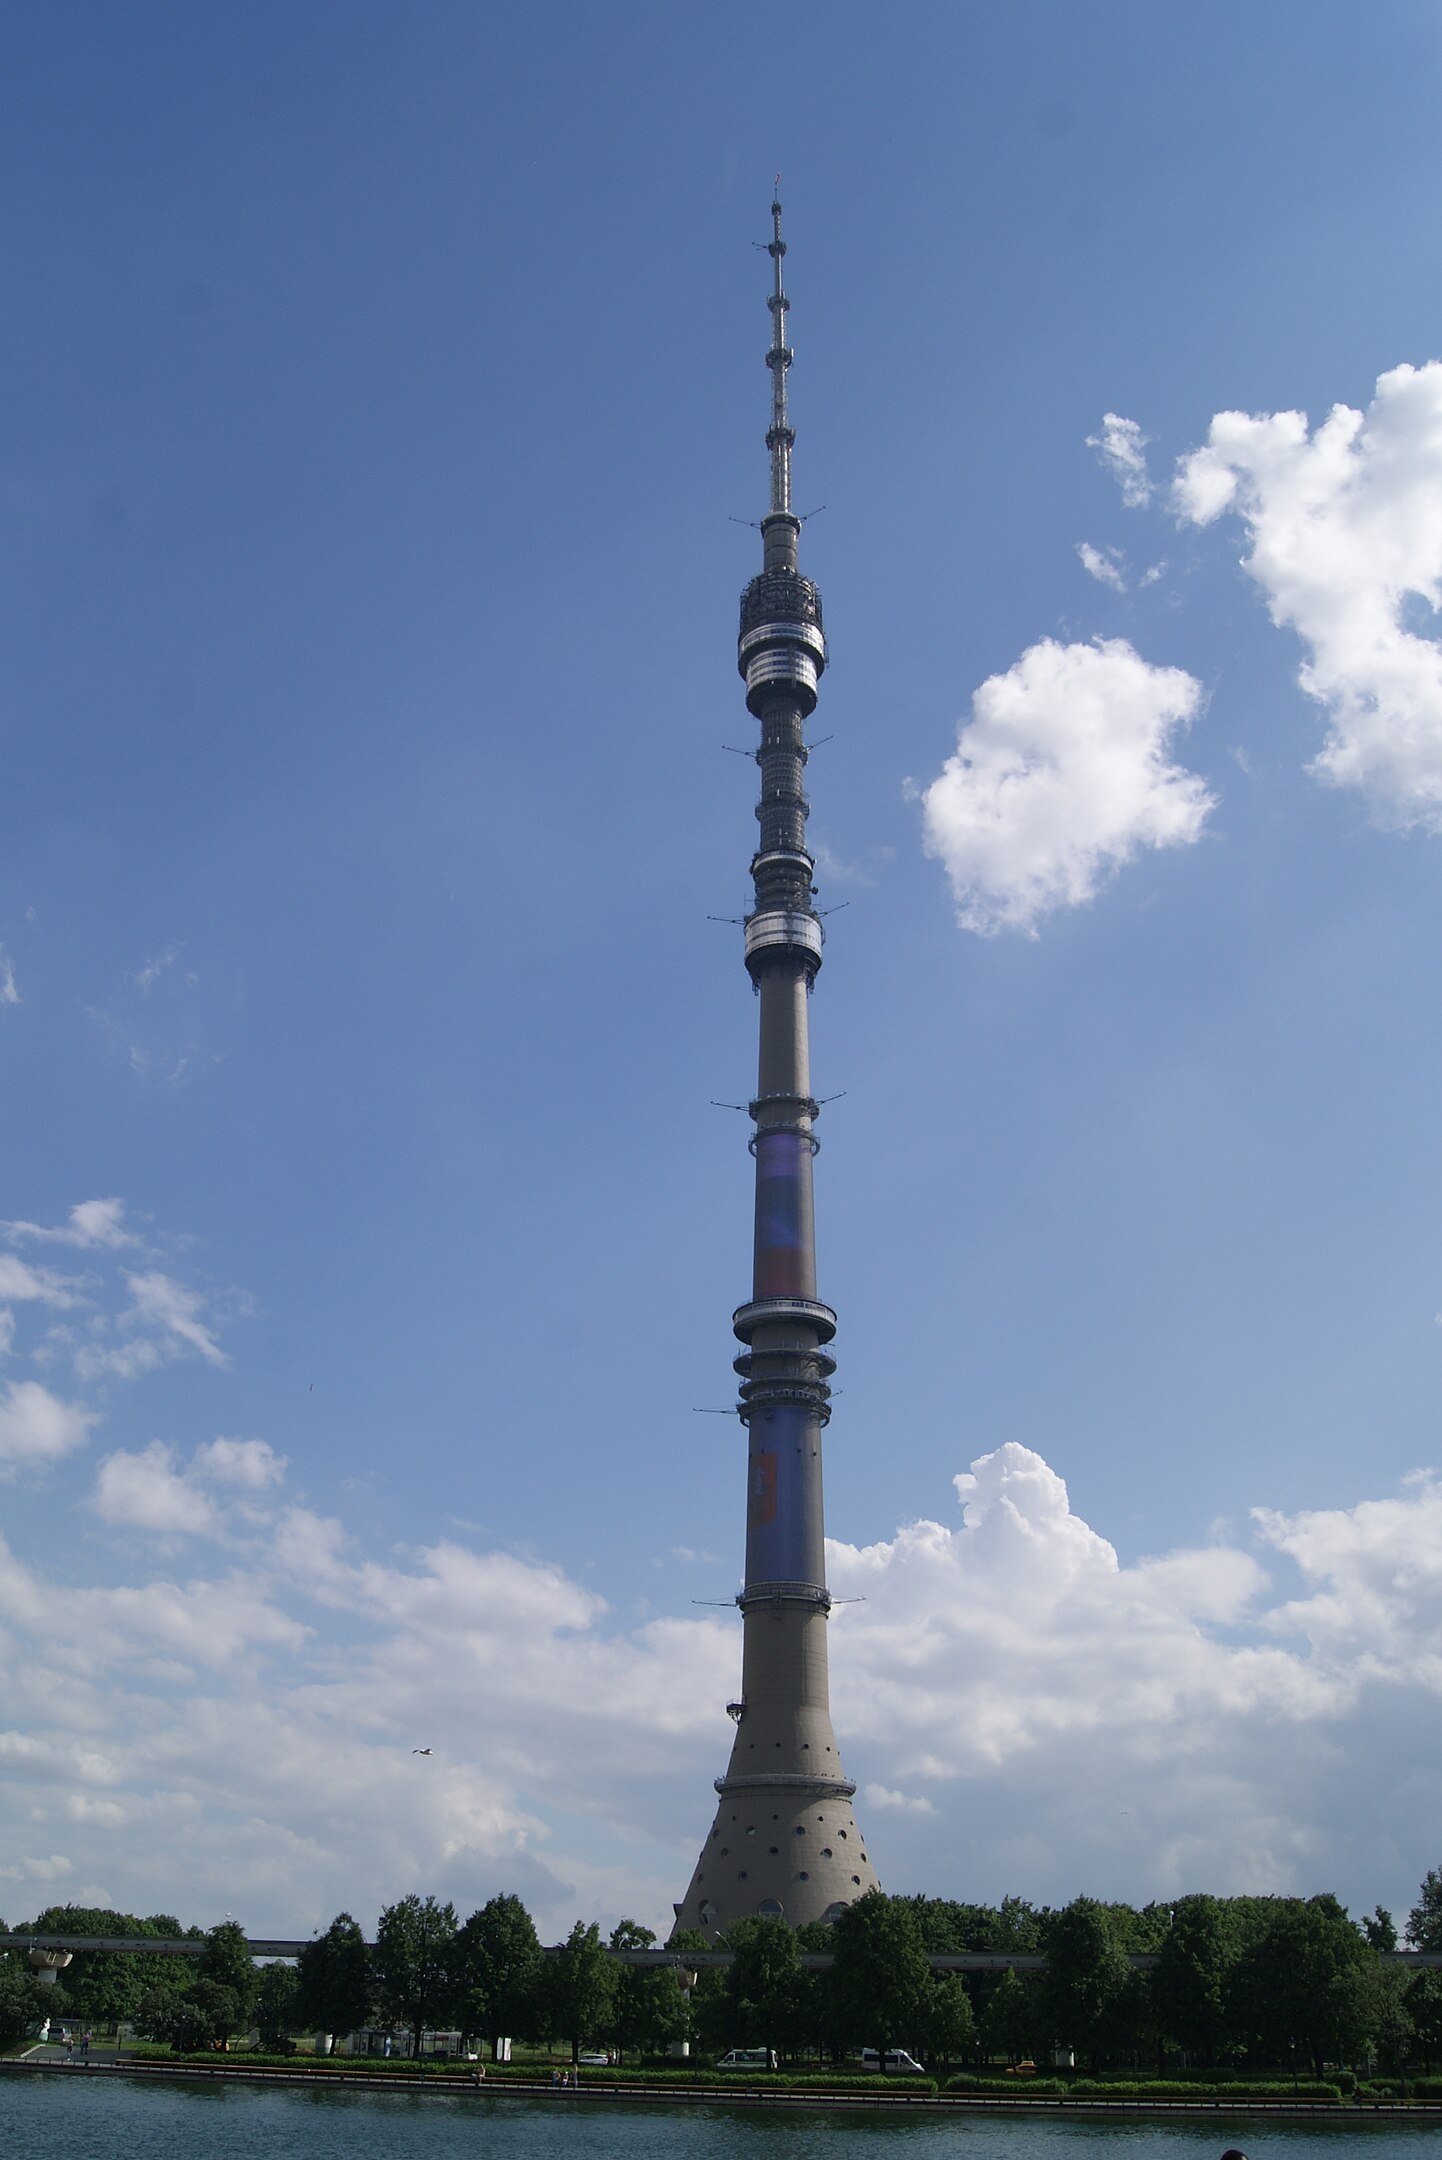 Ostankino - 540 metros - Rússia - A torre de telecomunicação foi inaugurada em 1967 em Moscou. Em 2002, a construção foi danificada por um incêndio, resultando na morte de três bombeiros e na interrupção da transmissão de TV e rádio. Após o acidente, foi restaurada com novas medidas de segurança. Reprodução: Flipar